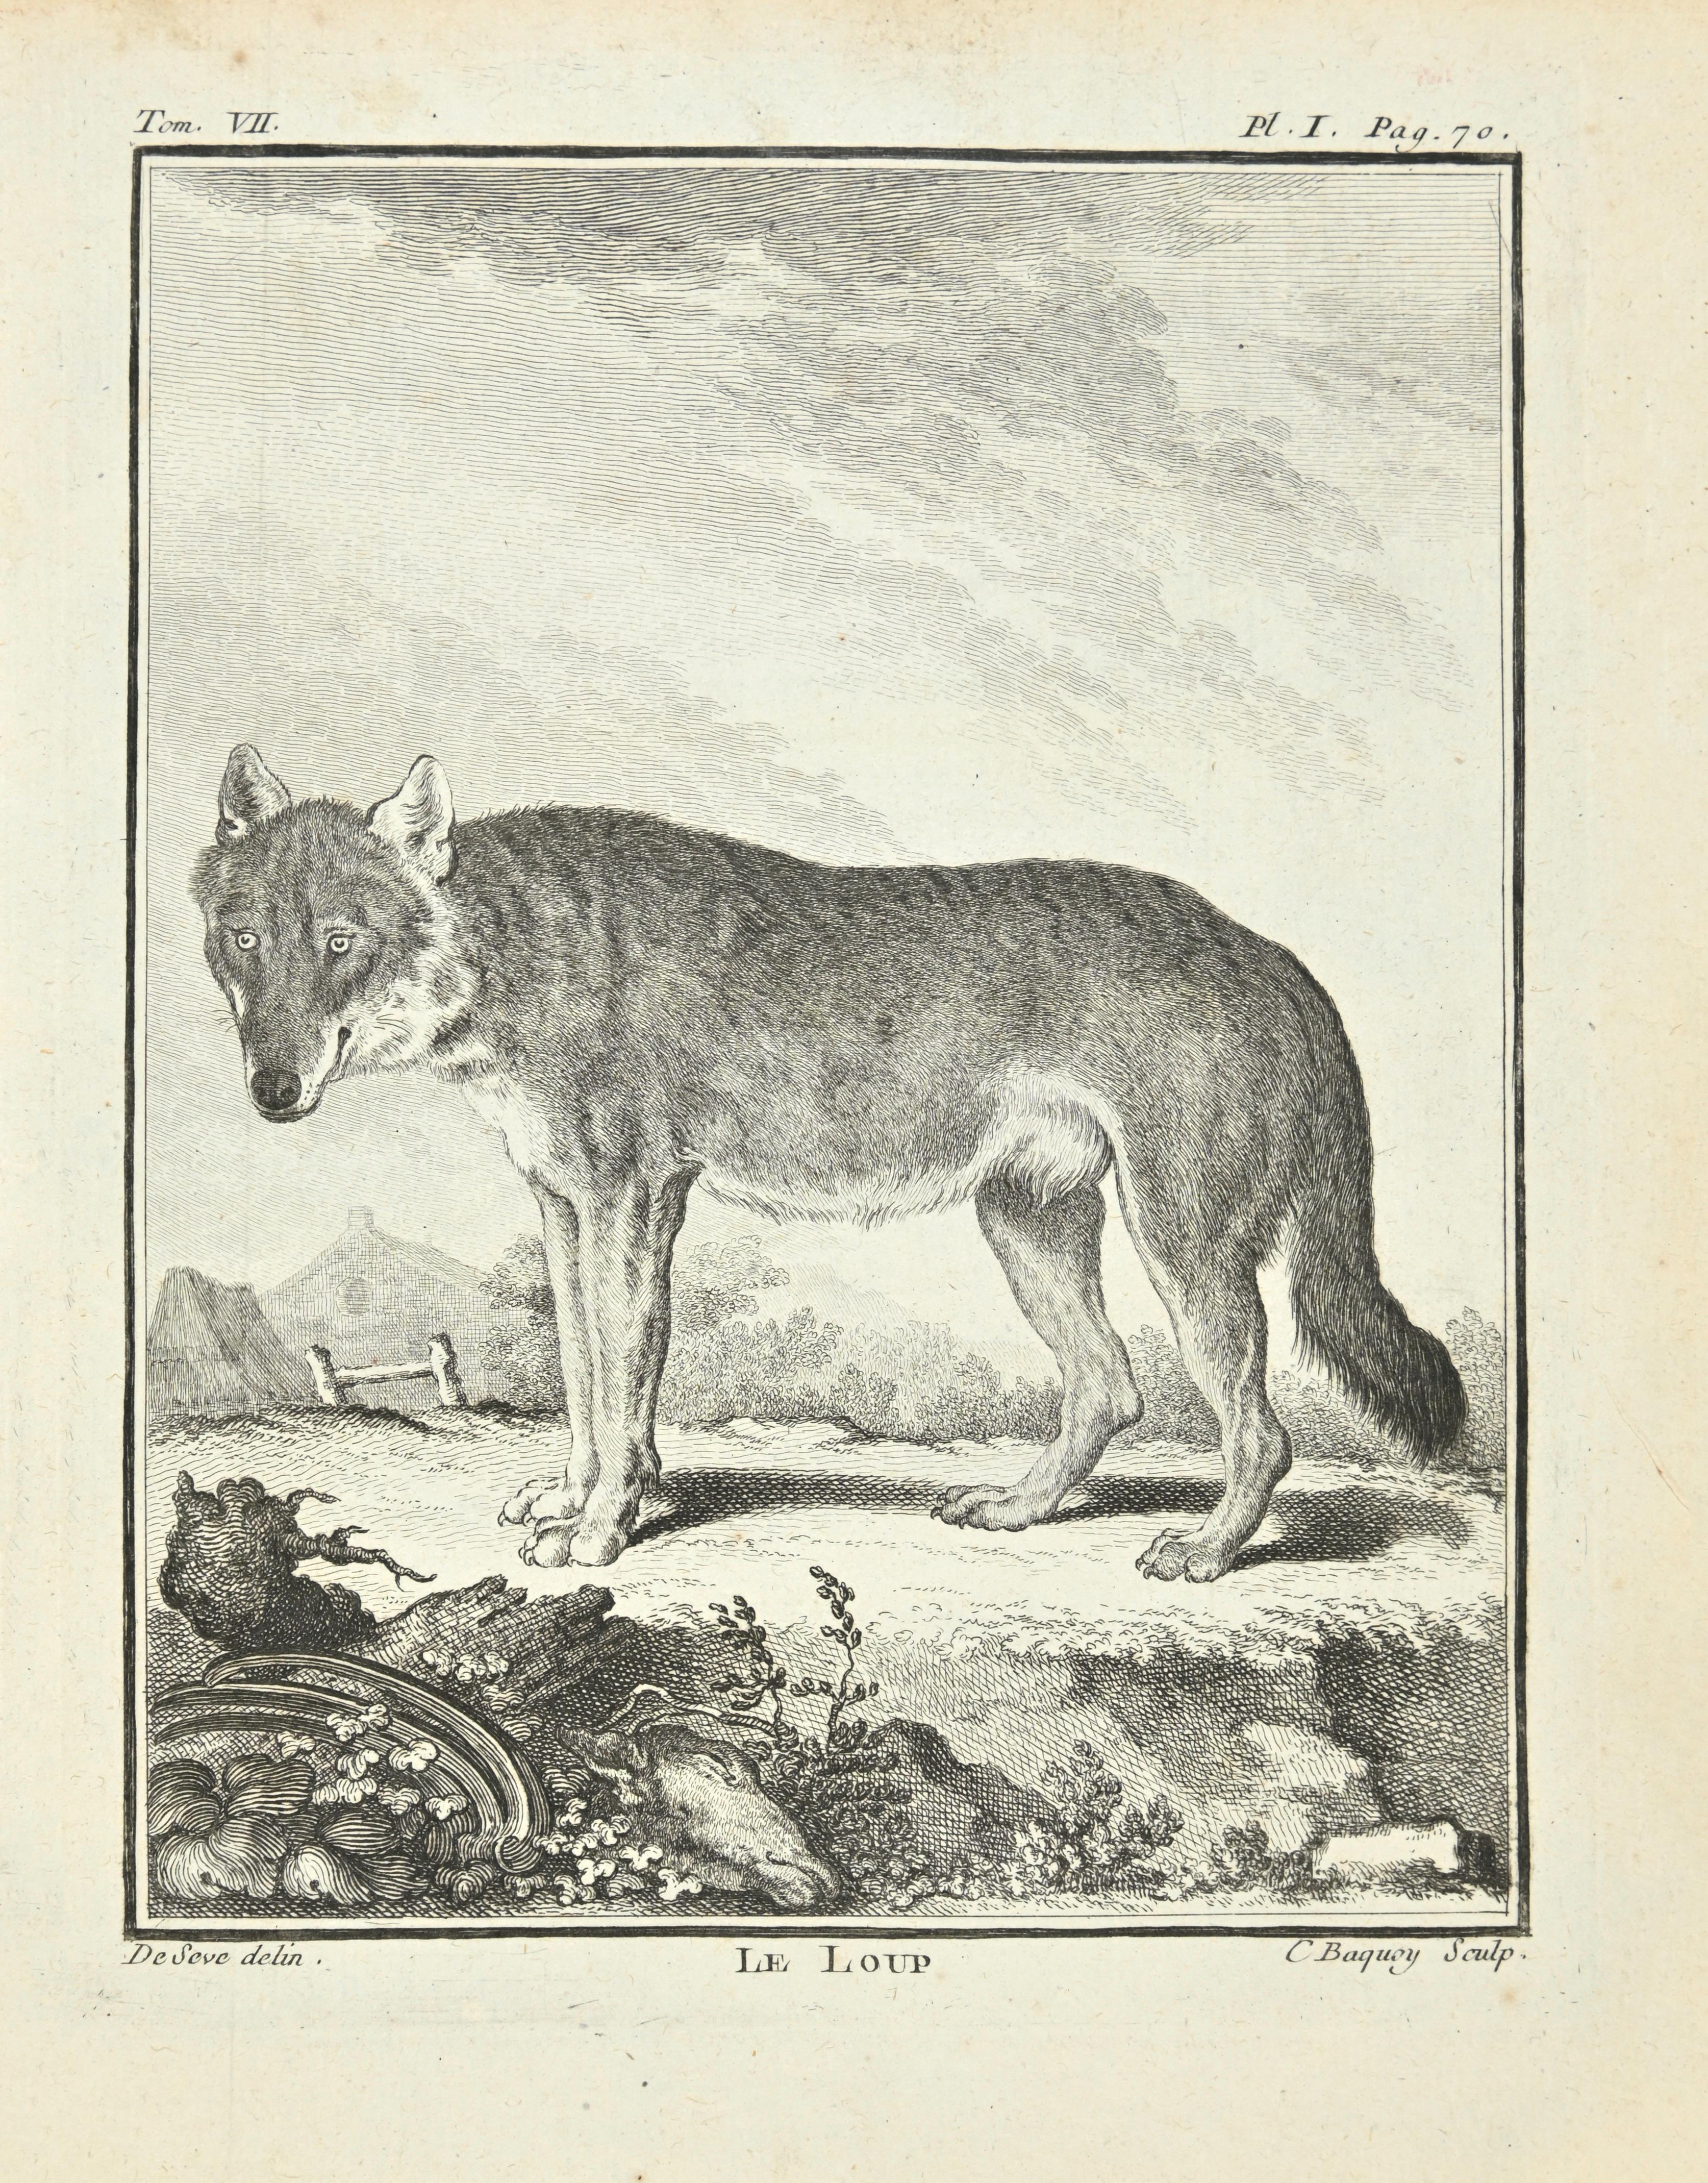 Le Loup est une eau-forte réalisée par Jean Charles Baquoy en 1771.

Il appartient à la suite "Histoire Naturelle de Buffon".

La signature de l'Artistics est gravée en bas à droite.

Bonnes conditions.